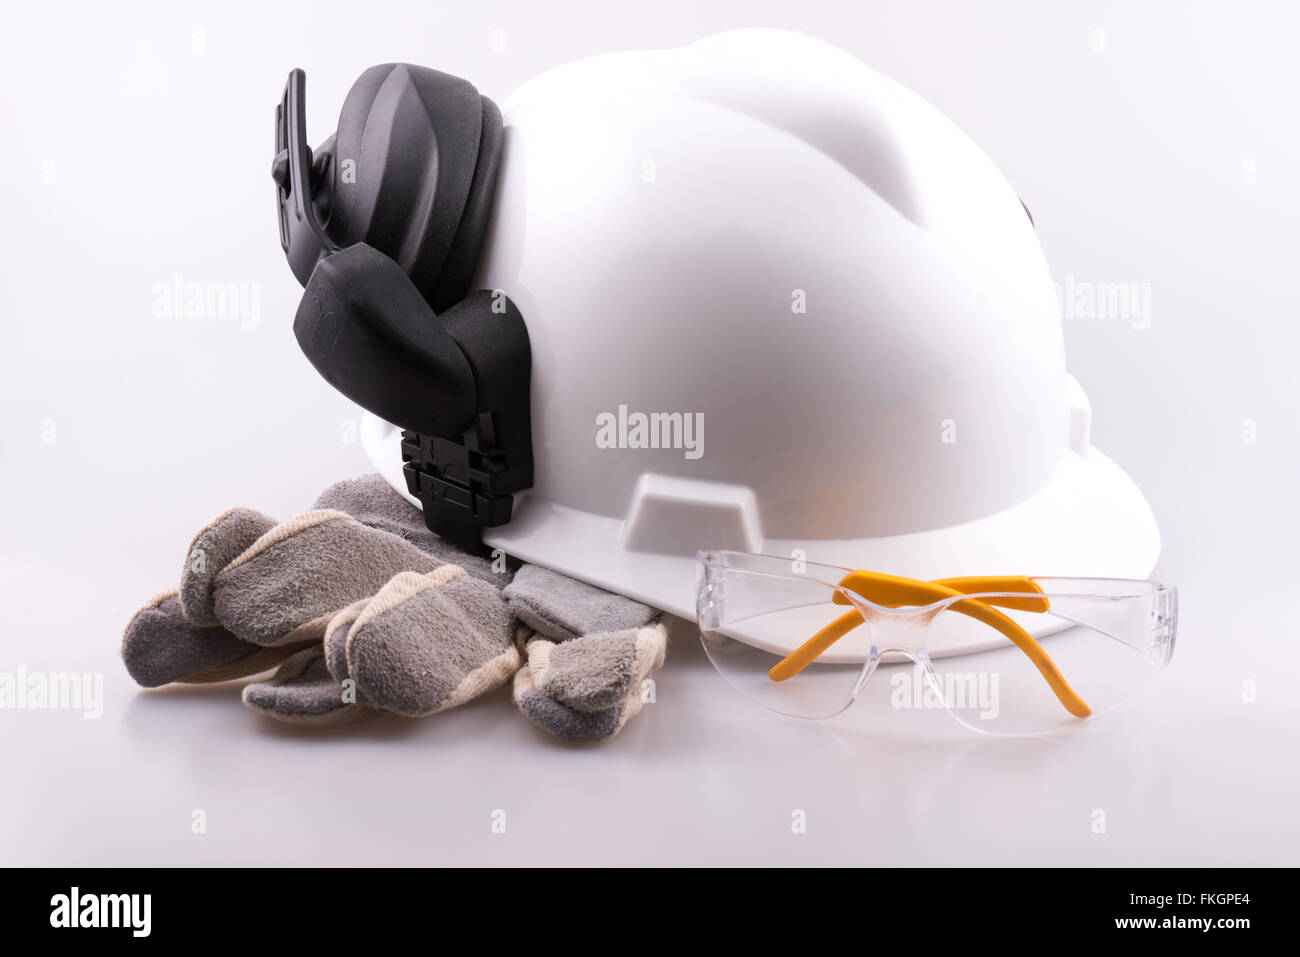 Casque, protège-oreilles, gants et lunettes de sécurité sur un fond blanc Banque D'Images